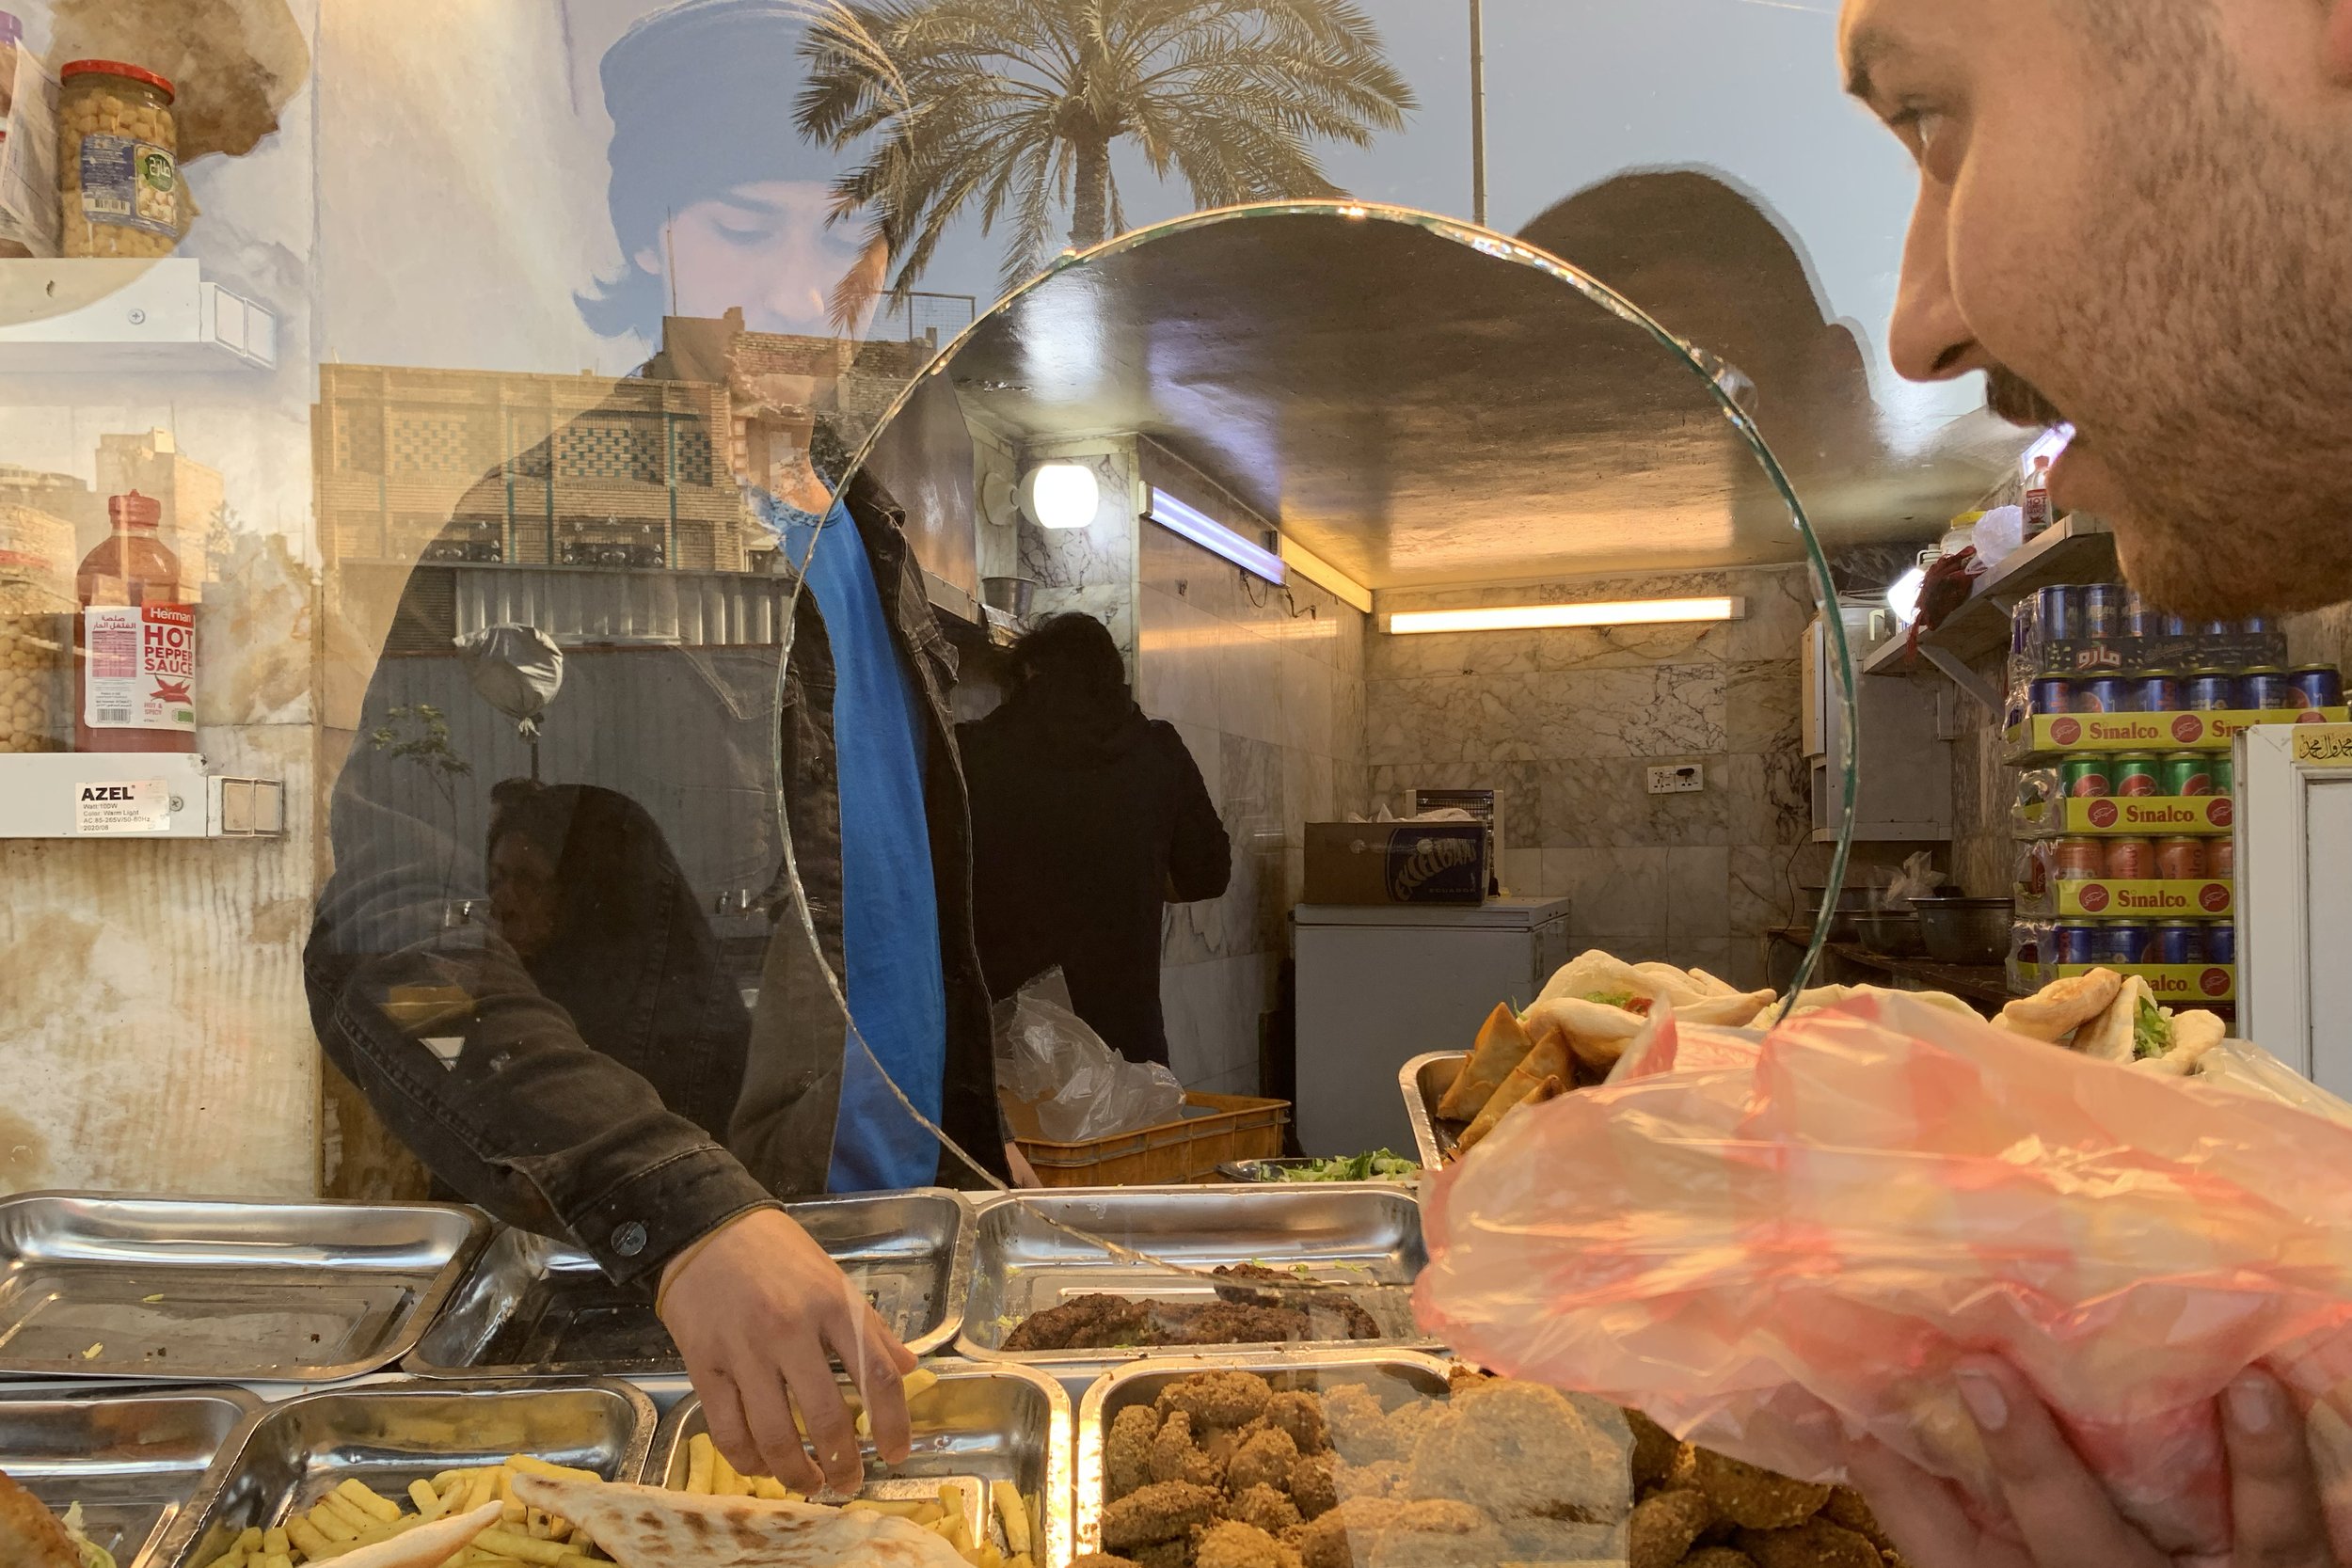 iraq-falalfel-street-food-baghdad.jpg